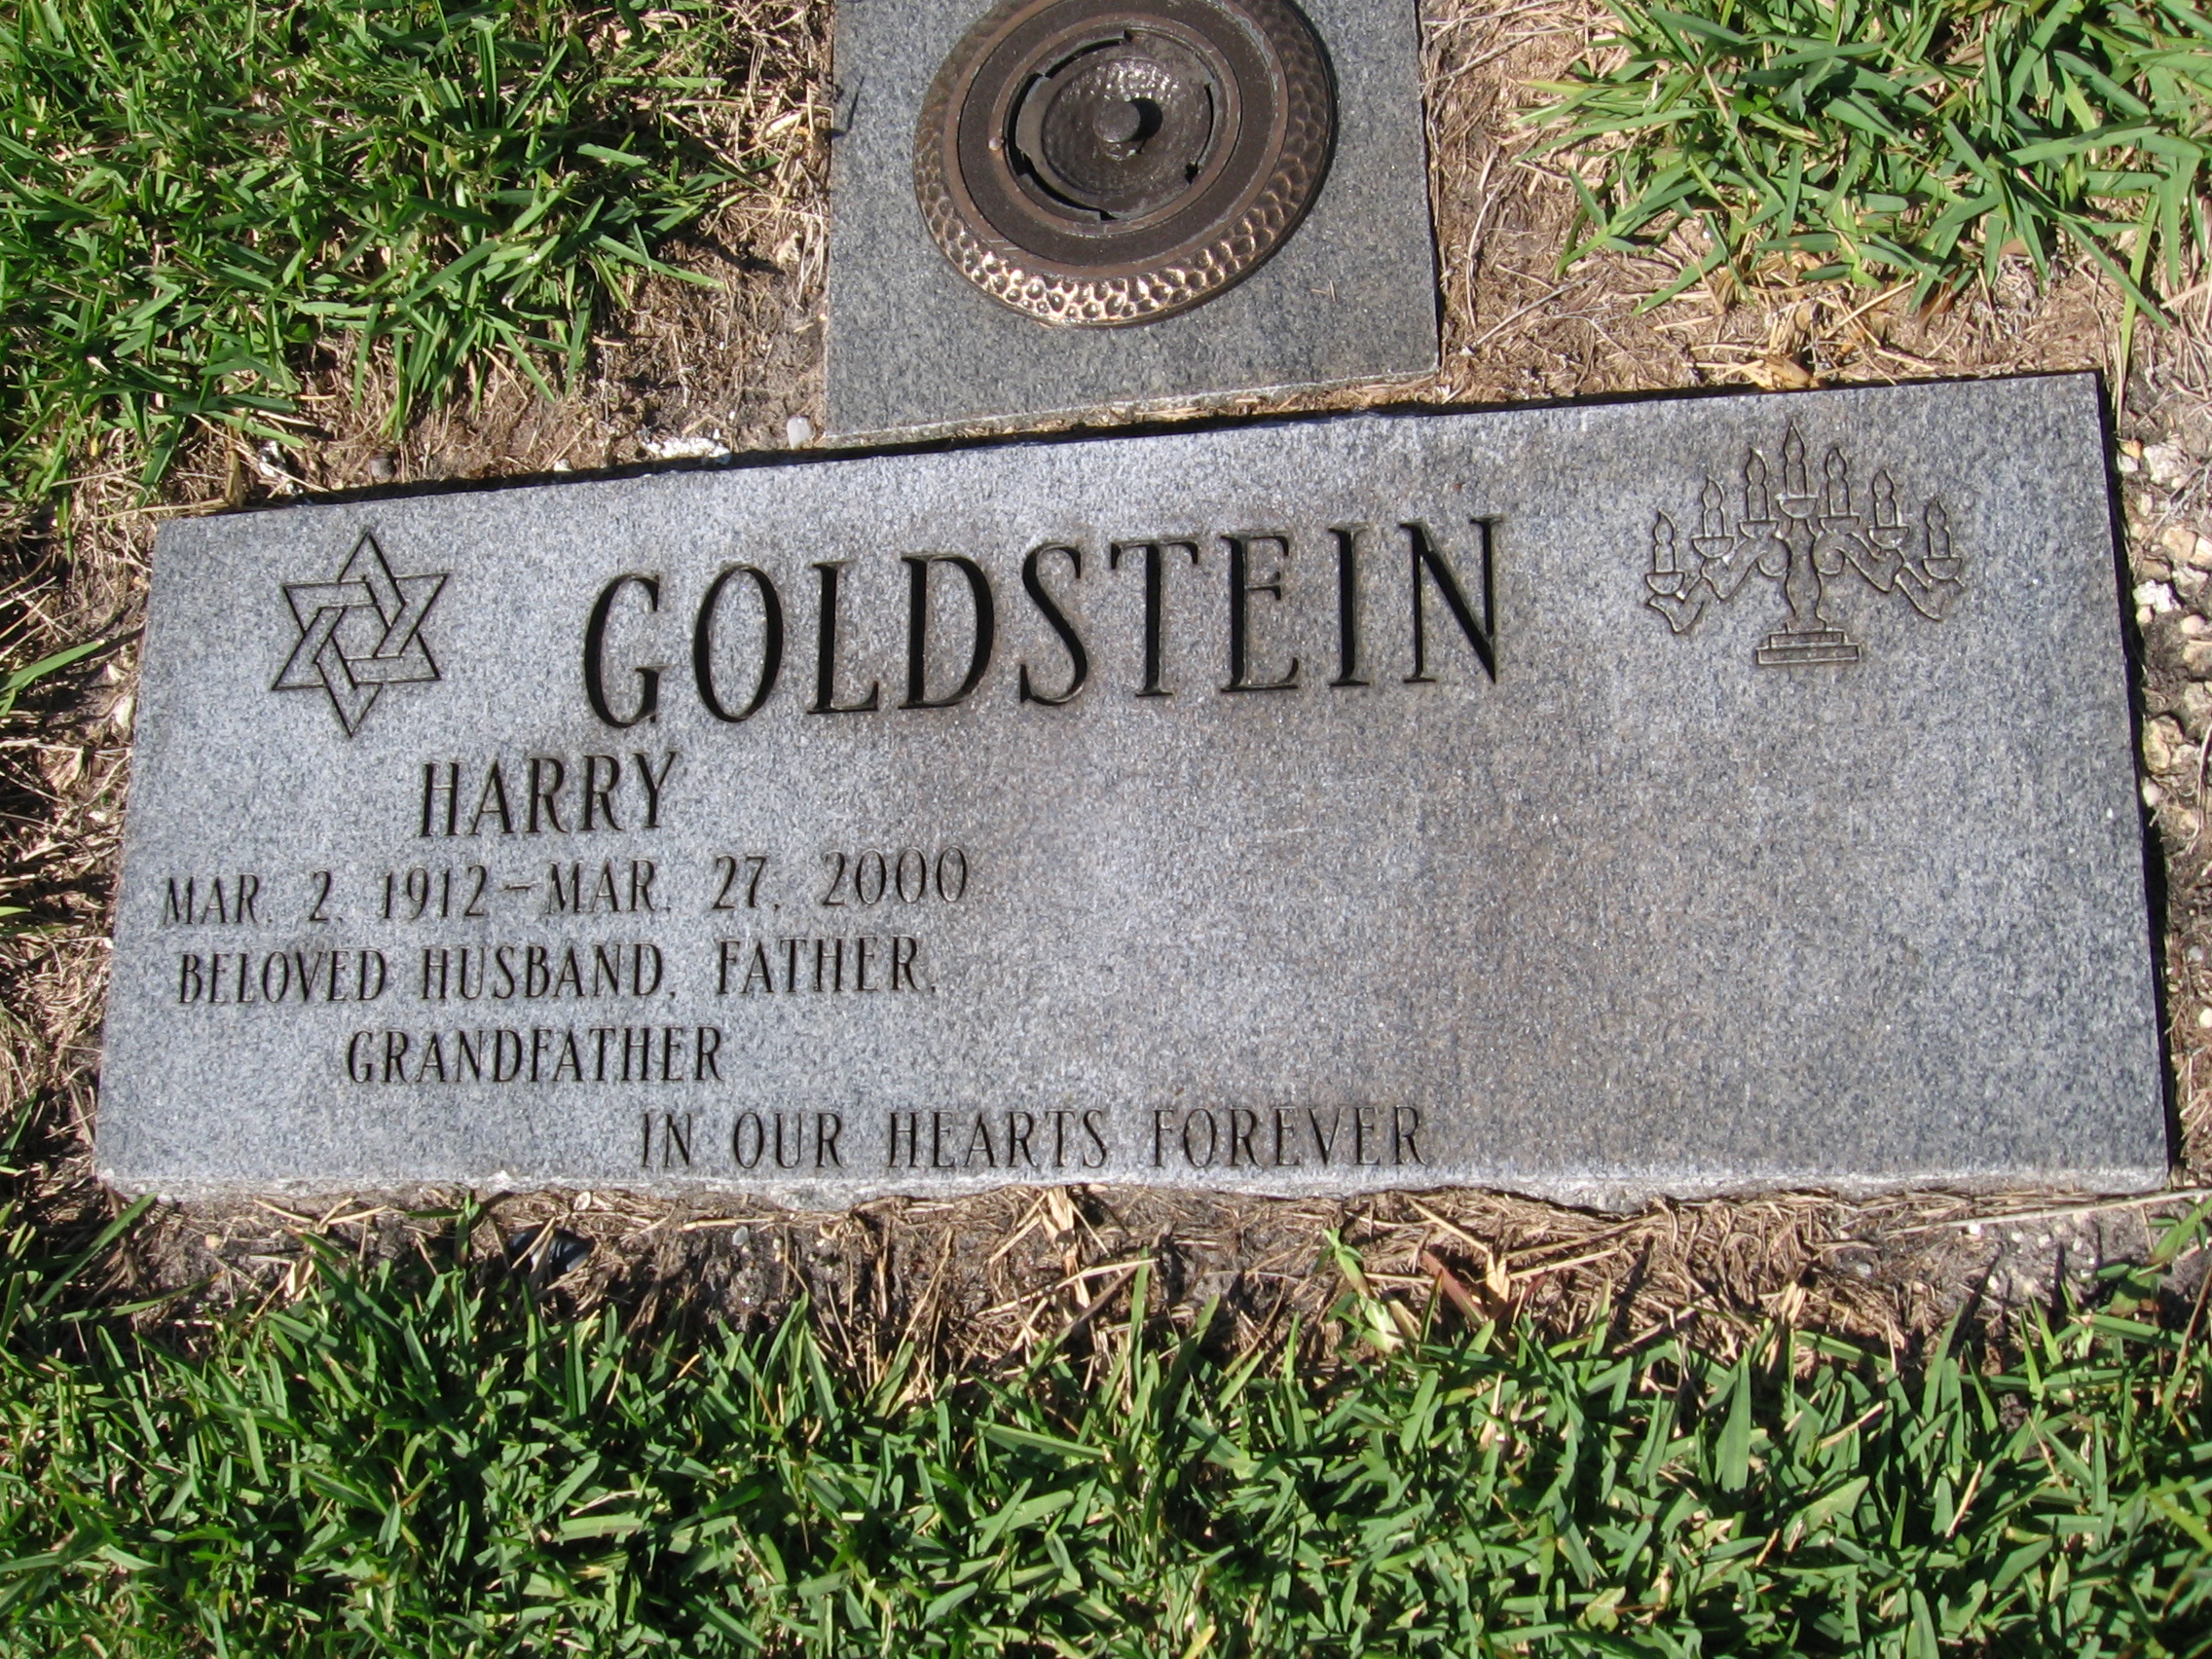 Harry Goldstein